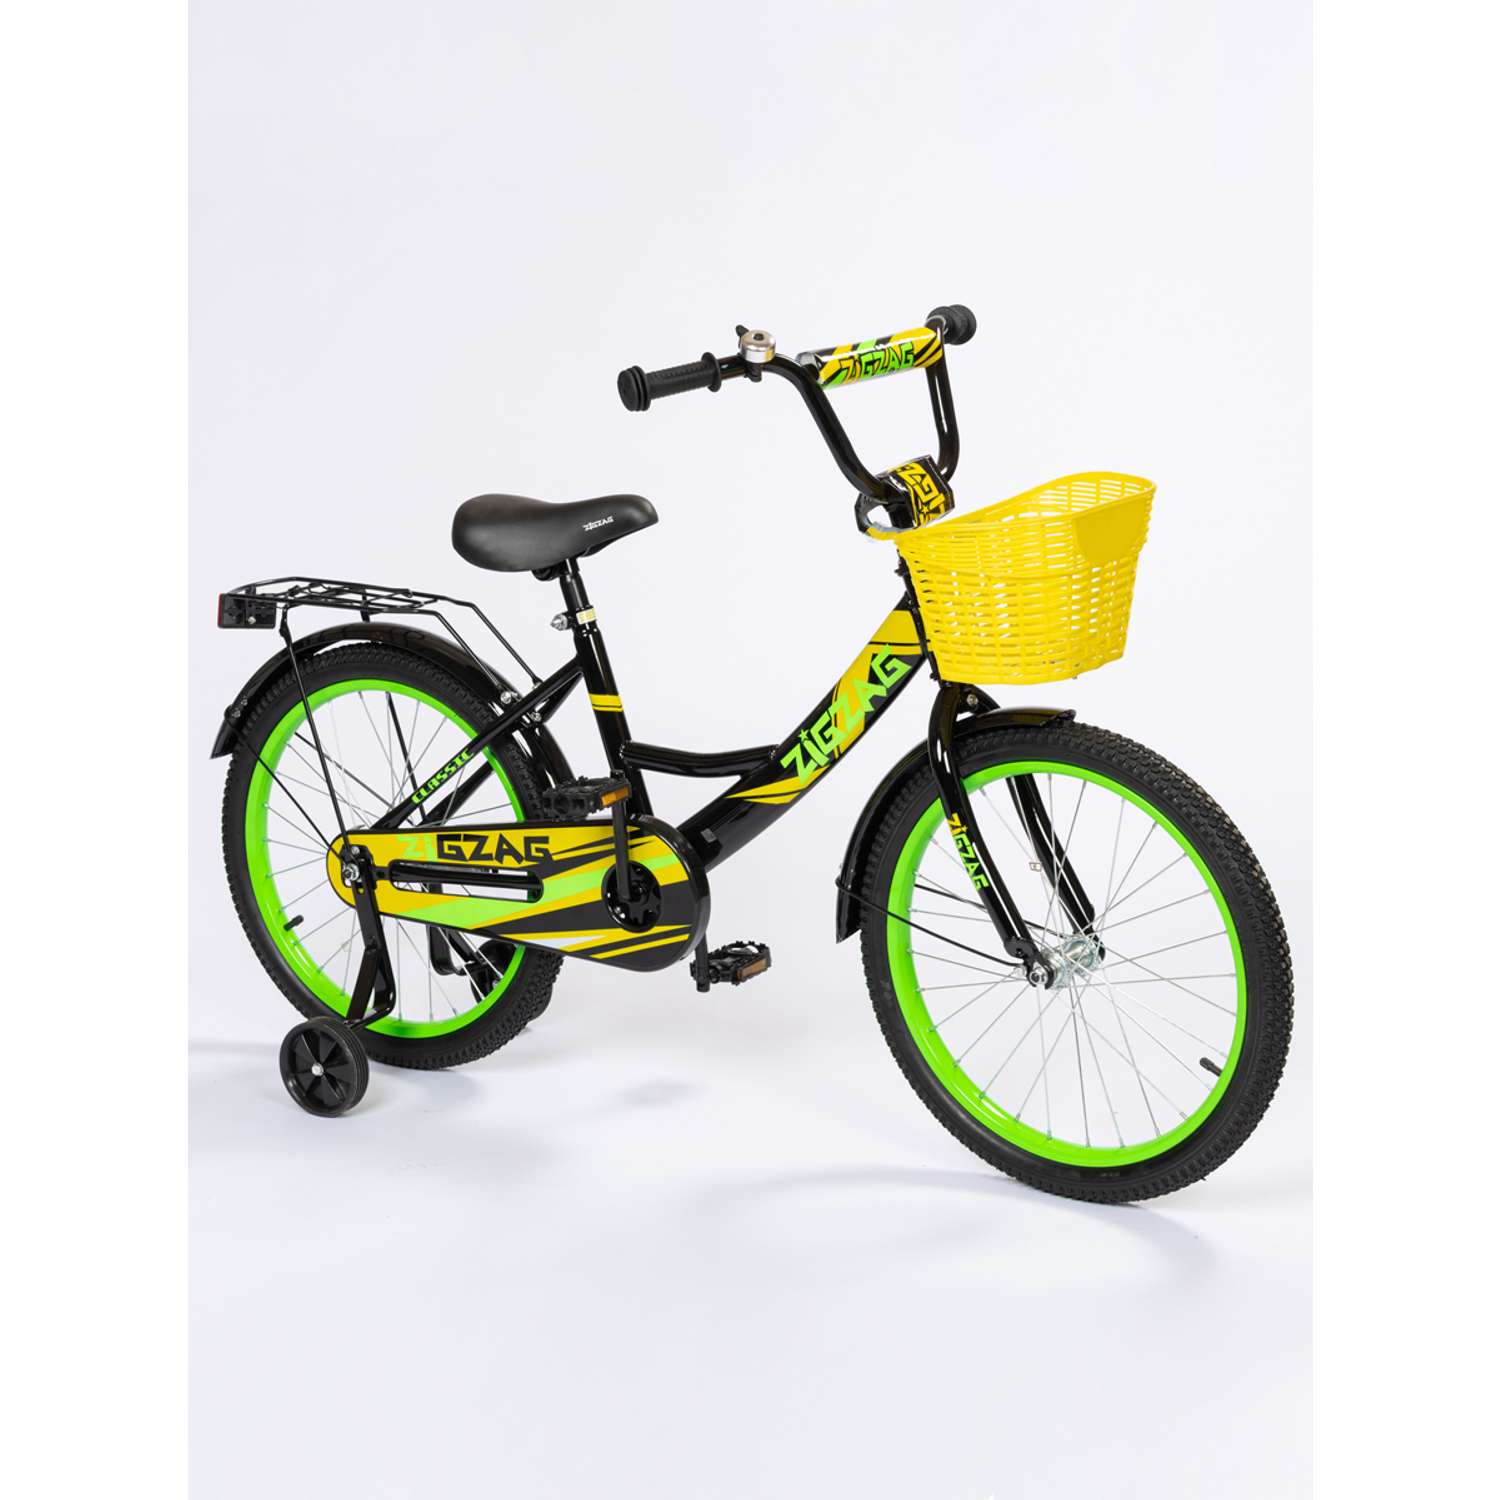 Велосипед ZigZag CLASSIC черный желтый зеленый 18 дюймов - фото 1